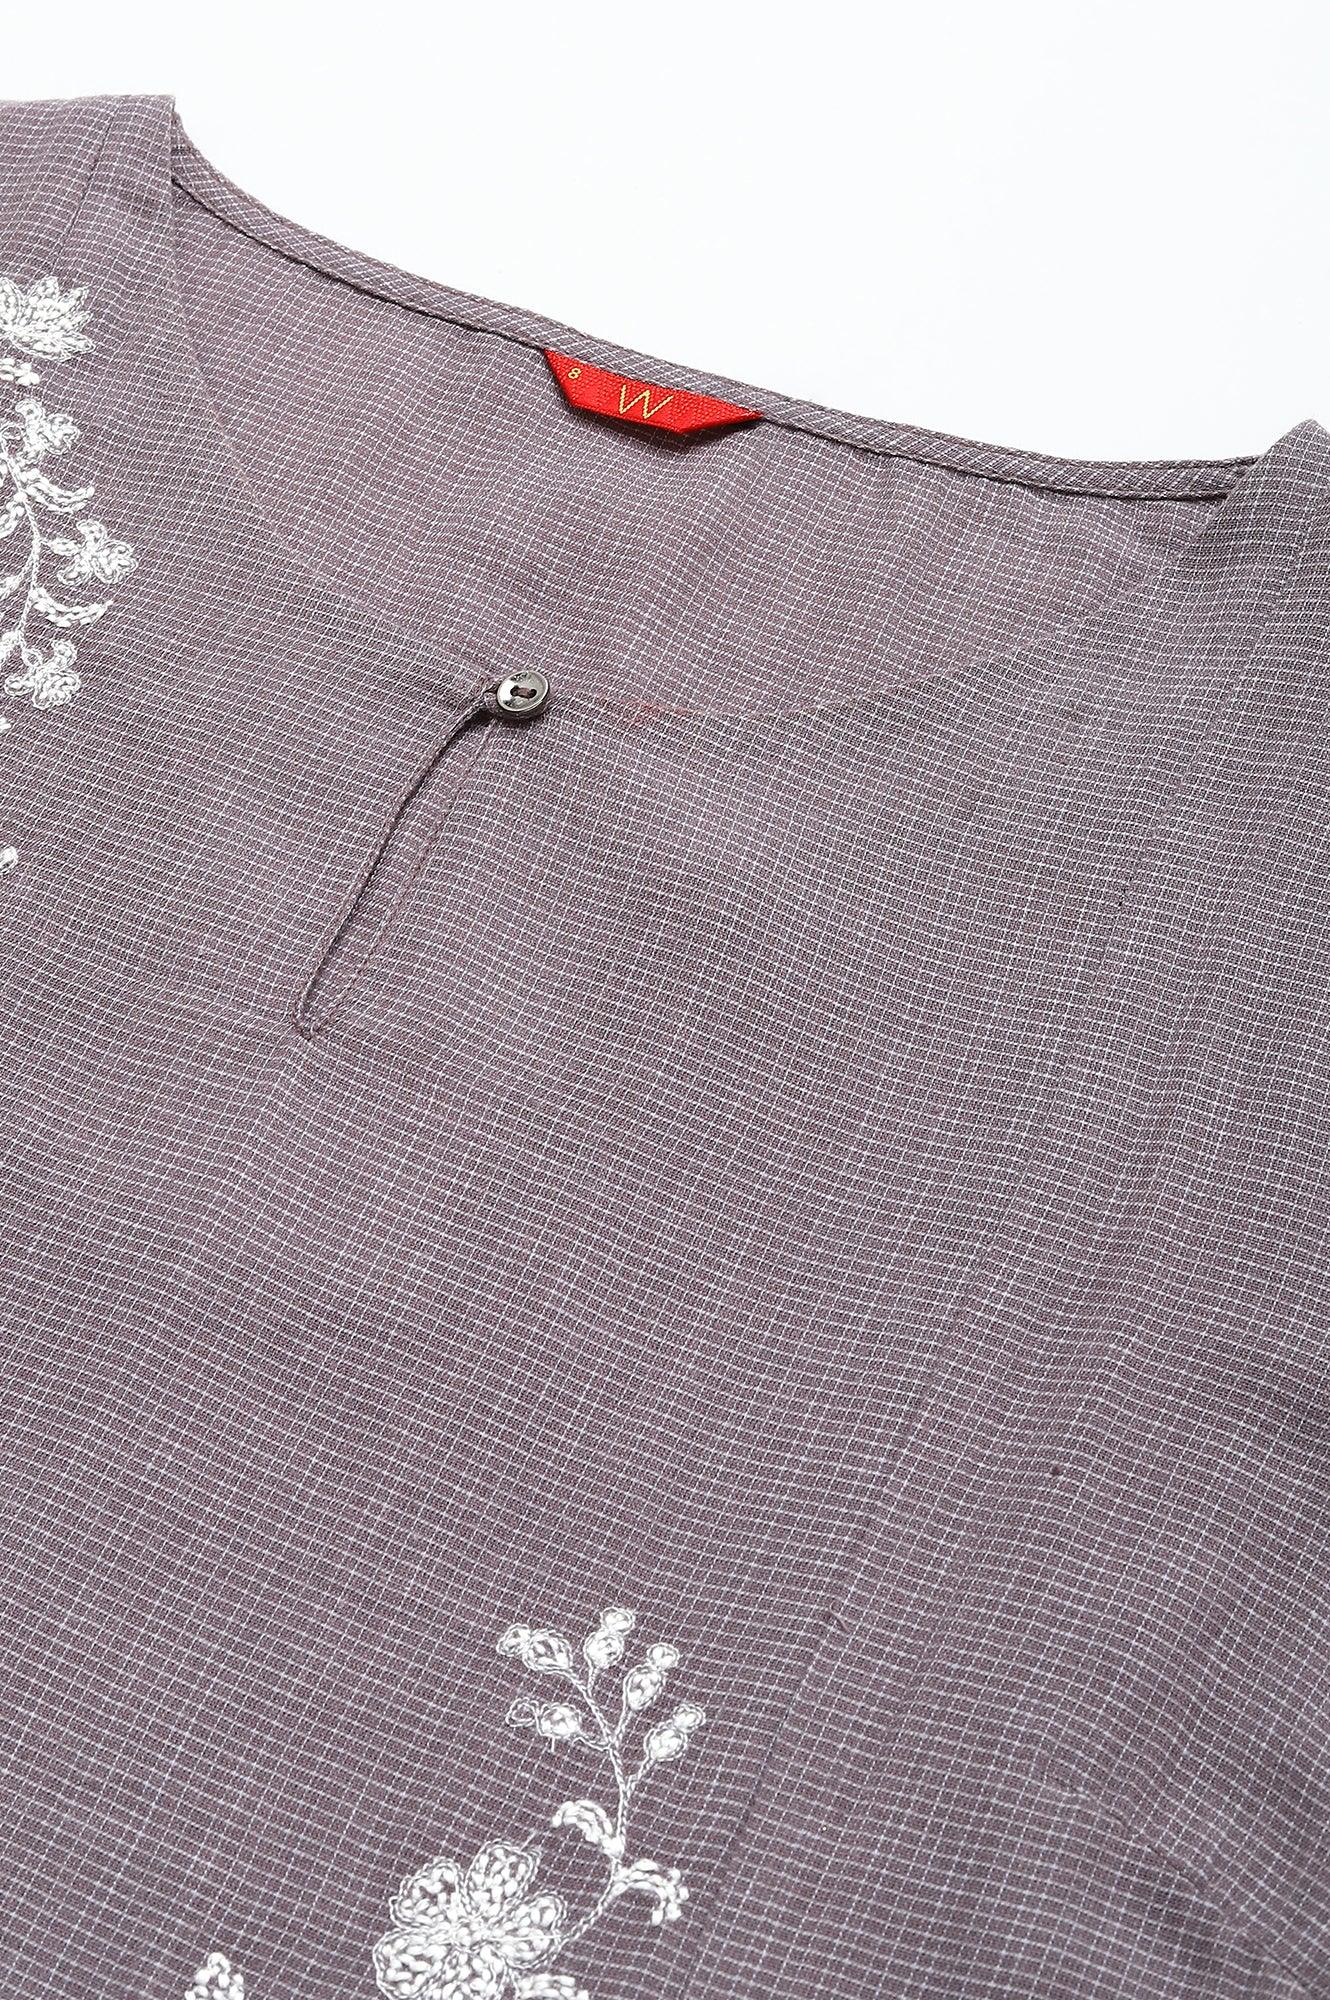 Dusk Purple Embroidered kurta - wforwoman